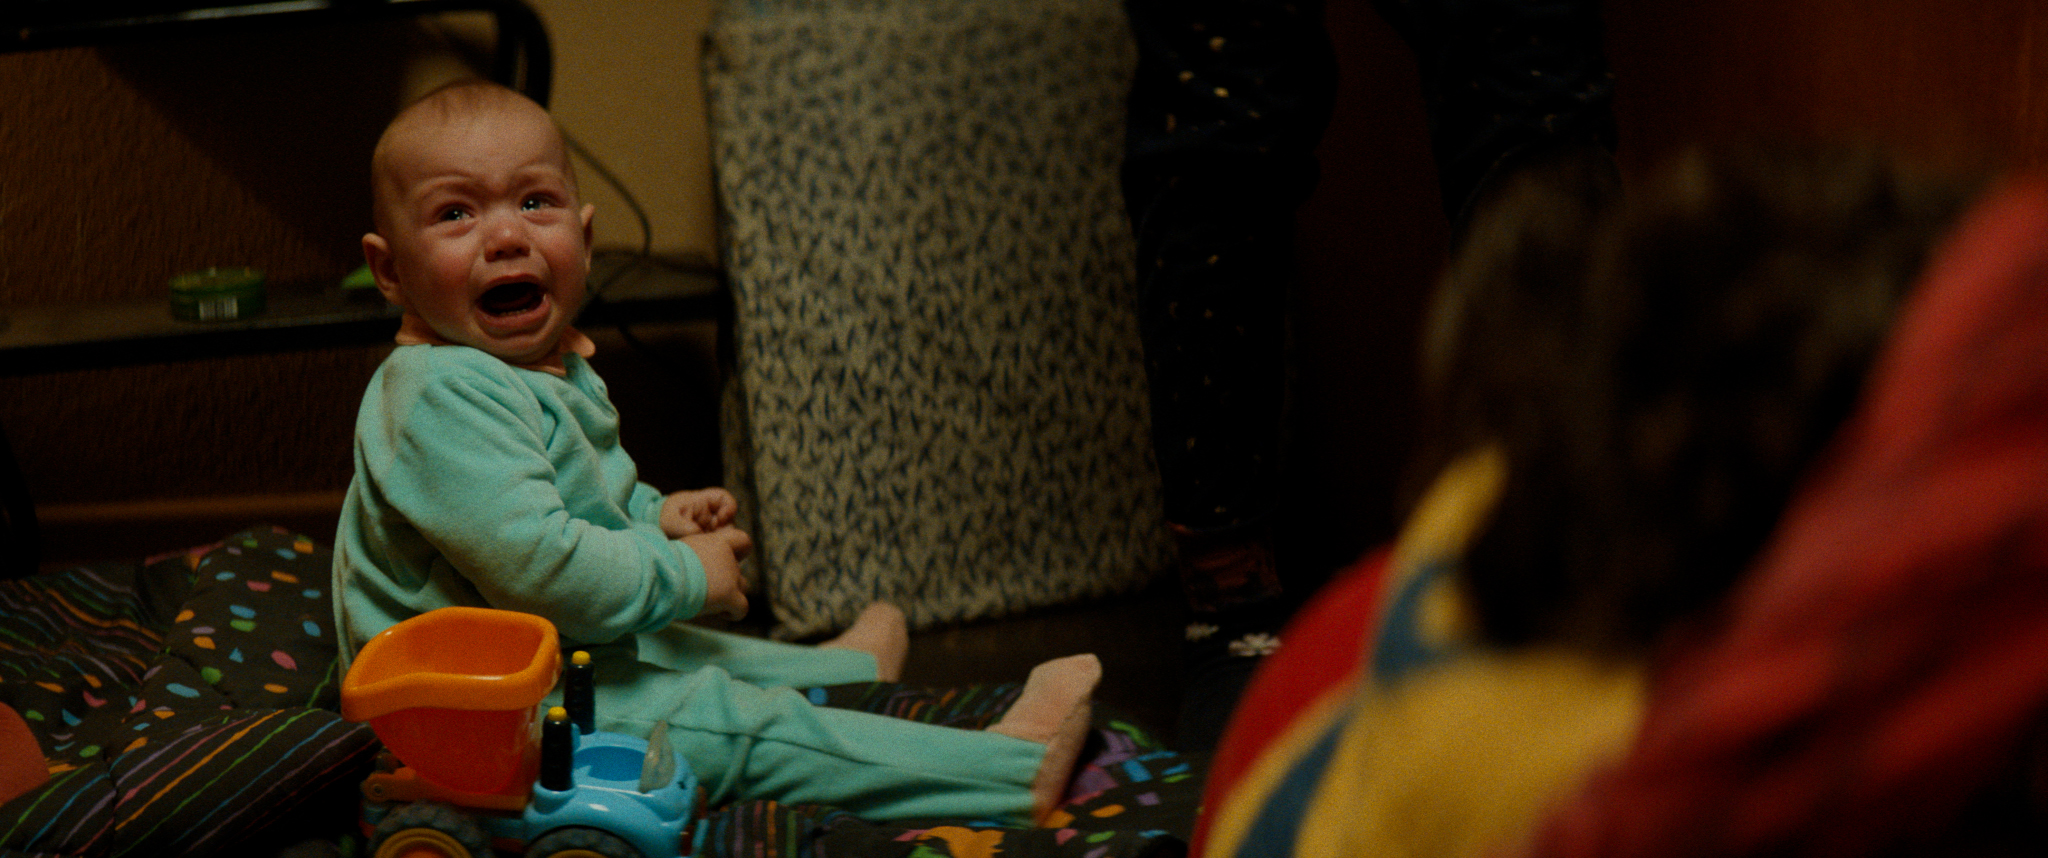 Filmstill aus "Kids Run": Ein schreiendes Baby sitzt auf dem Fußboden einer Wohnung.